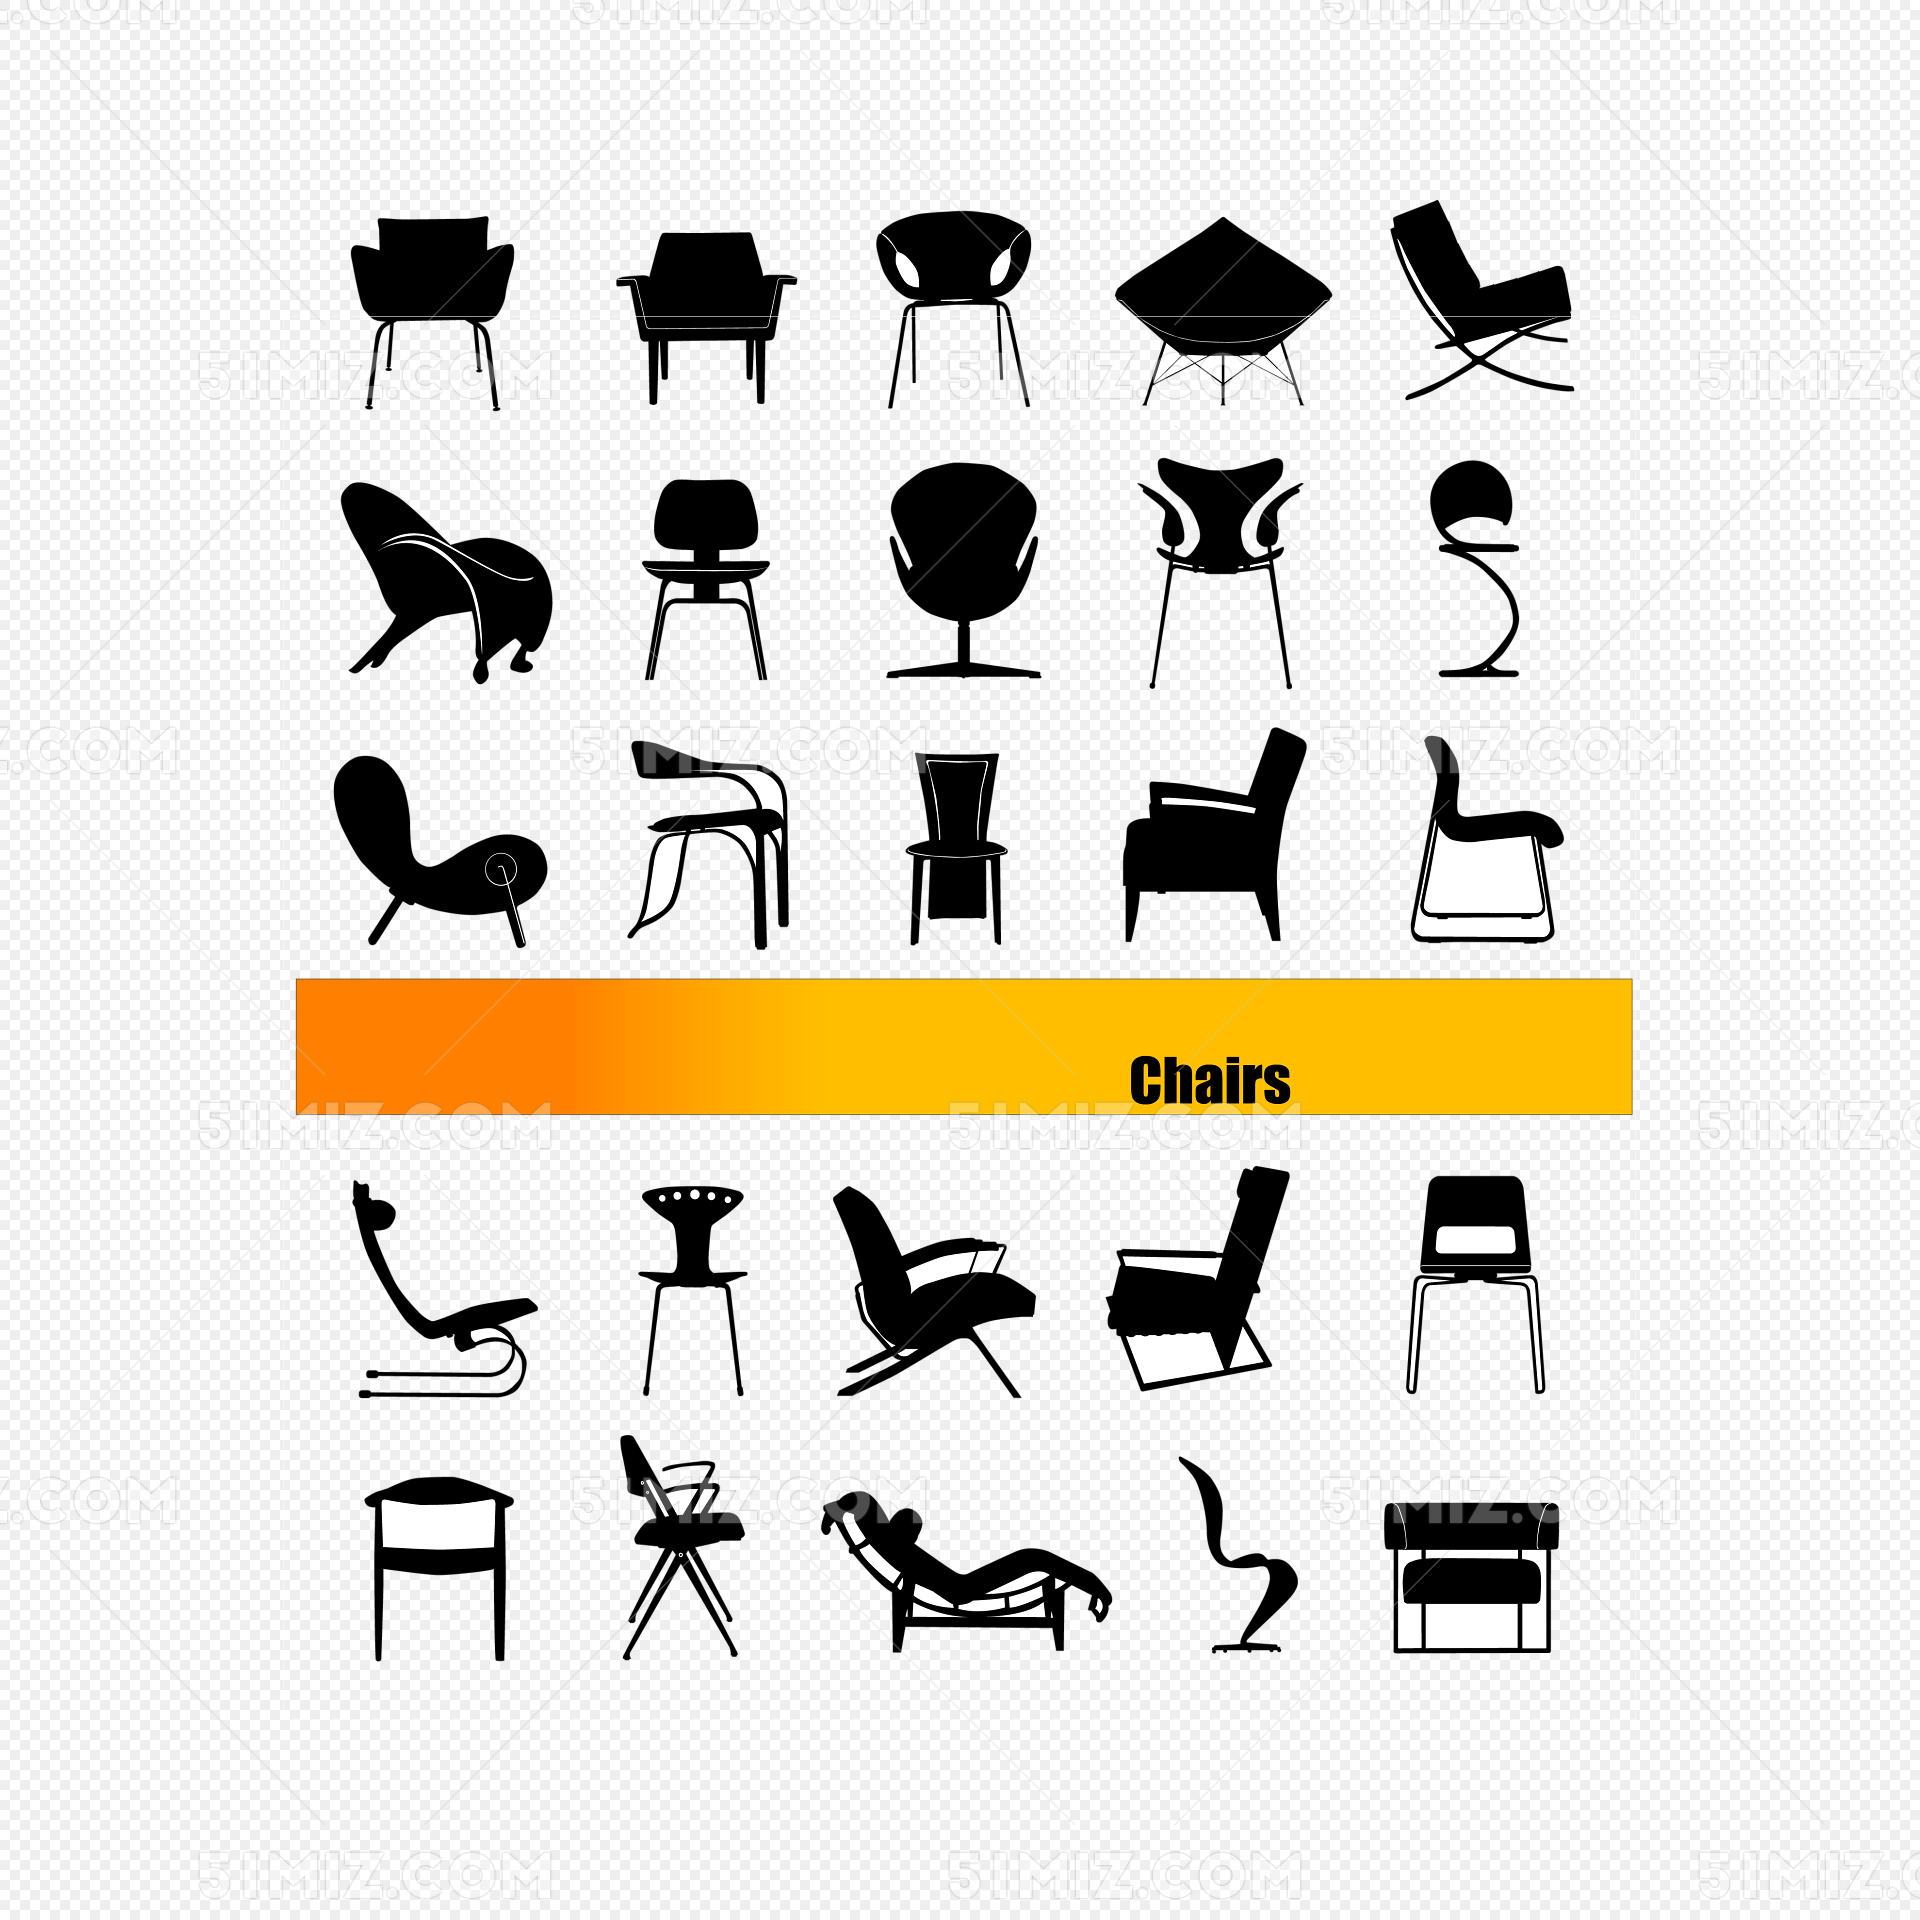 漫画人物坐椅子 库存例证. 插画 包括有 家具, 商业, 动画片, 回报, 扶手, 椅子, 字符, 例证 - 24851231